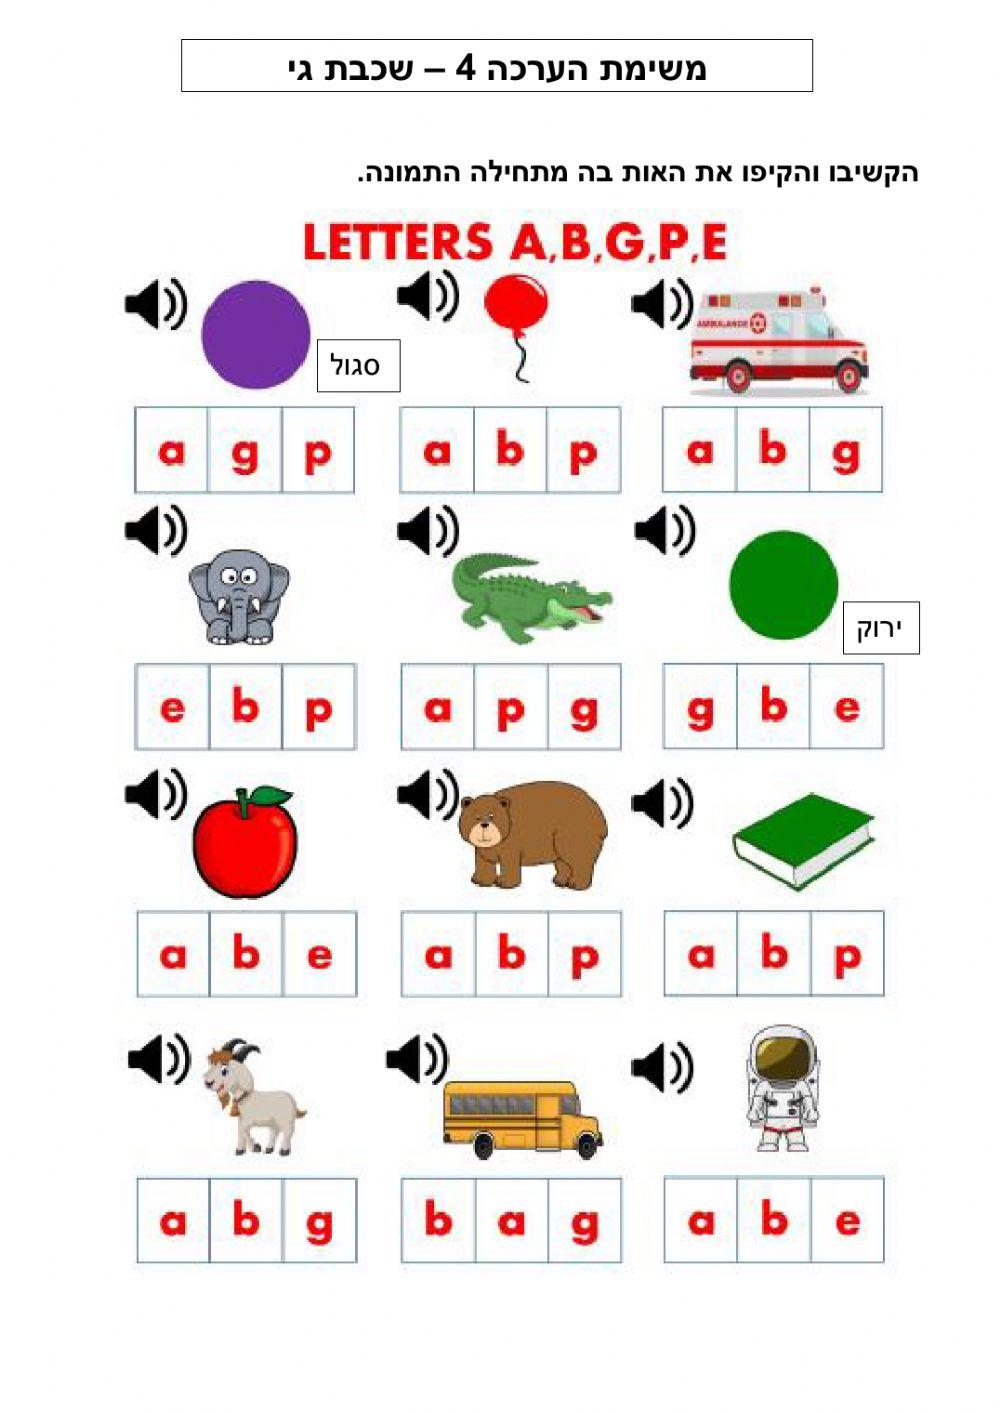 Letters A, B, G, P, E